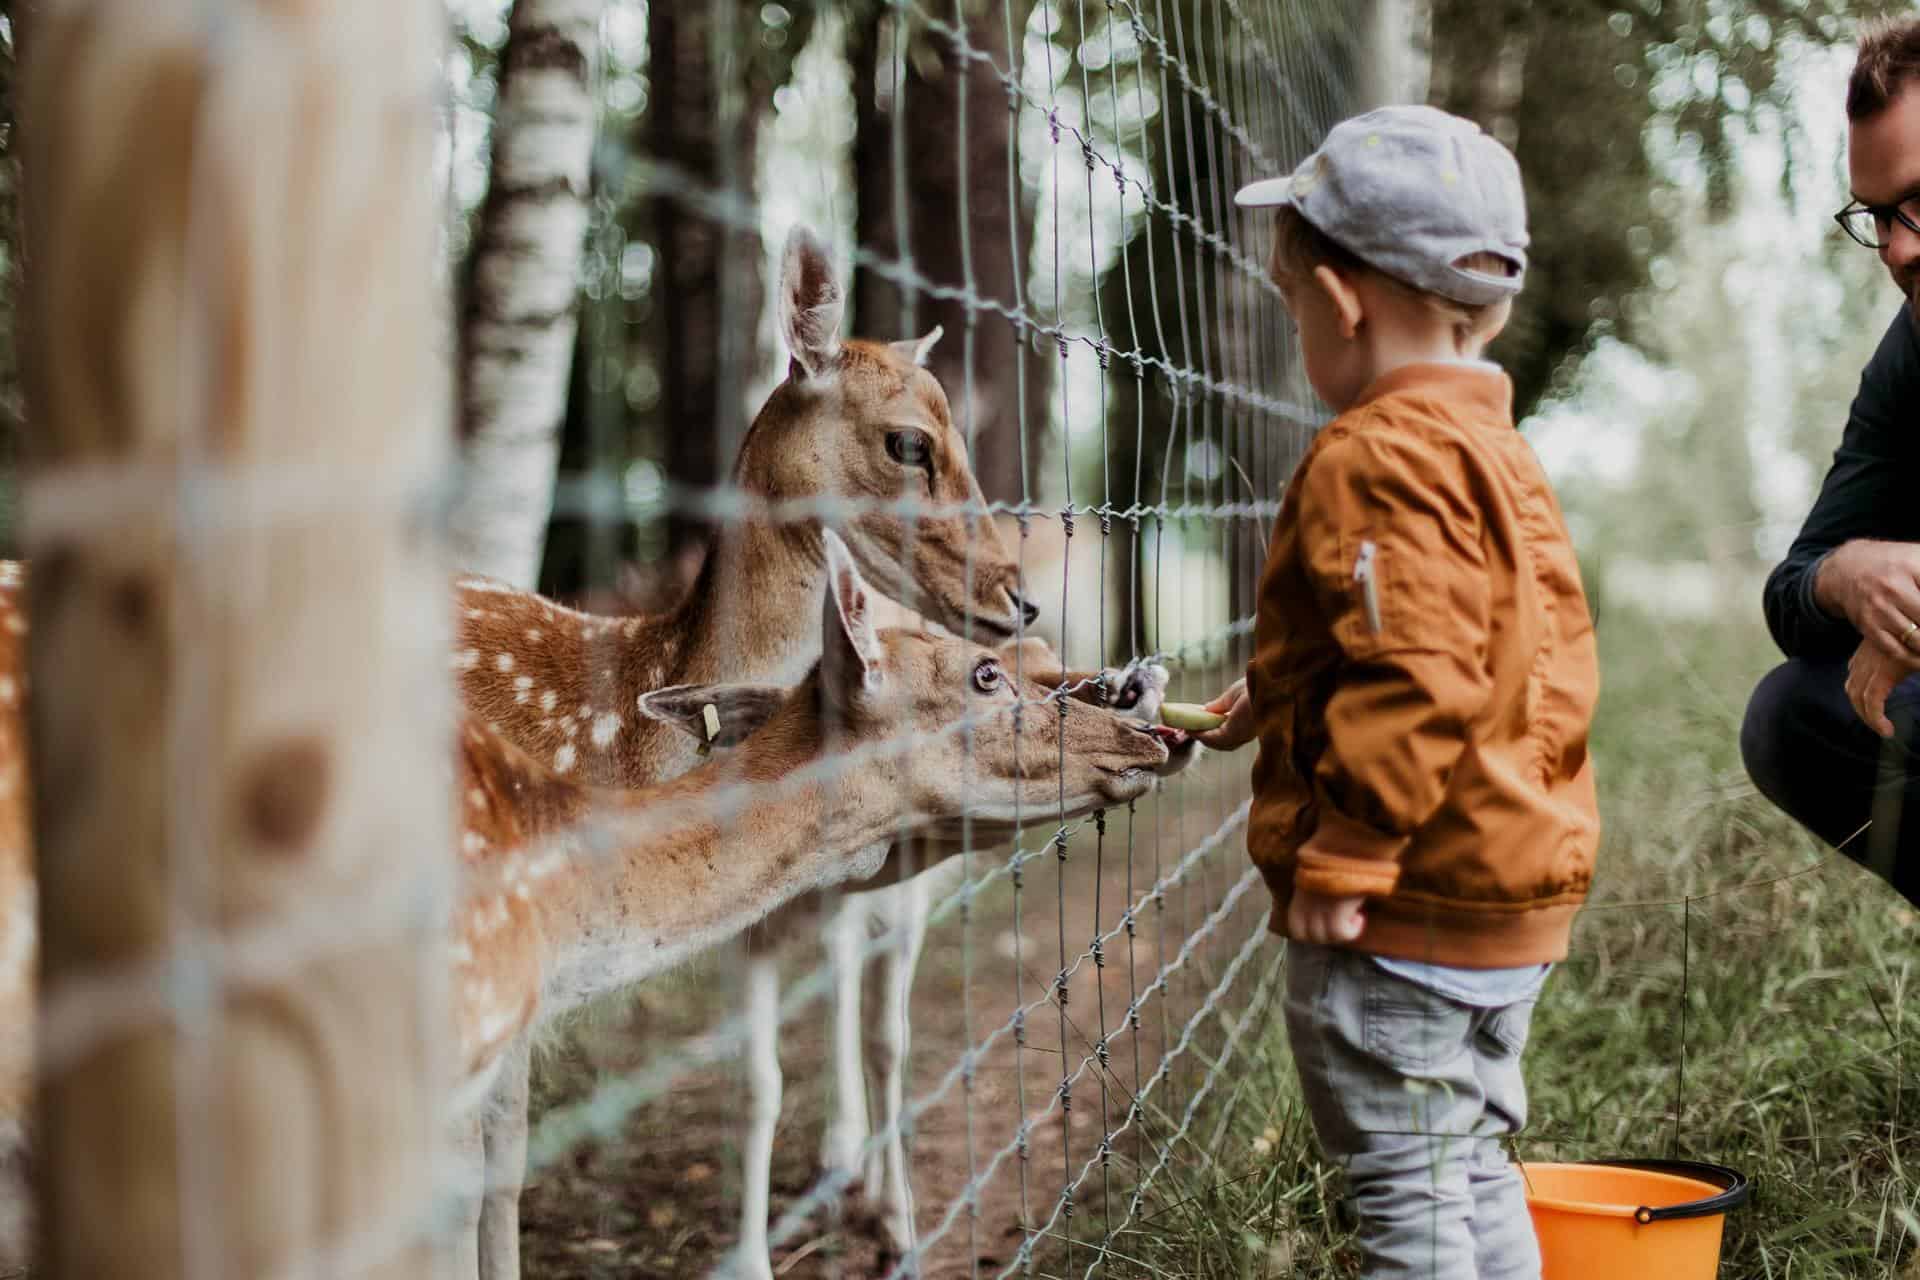 Exmoor Zoo, Britain - Child feeding a gazelle